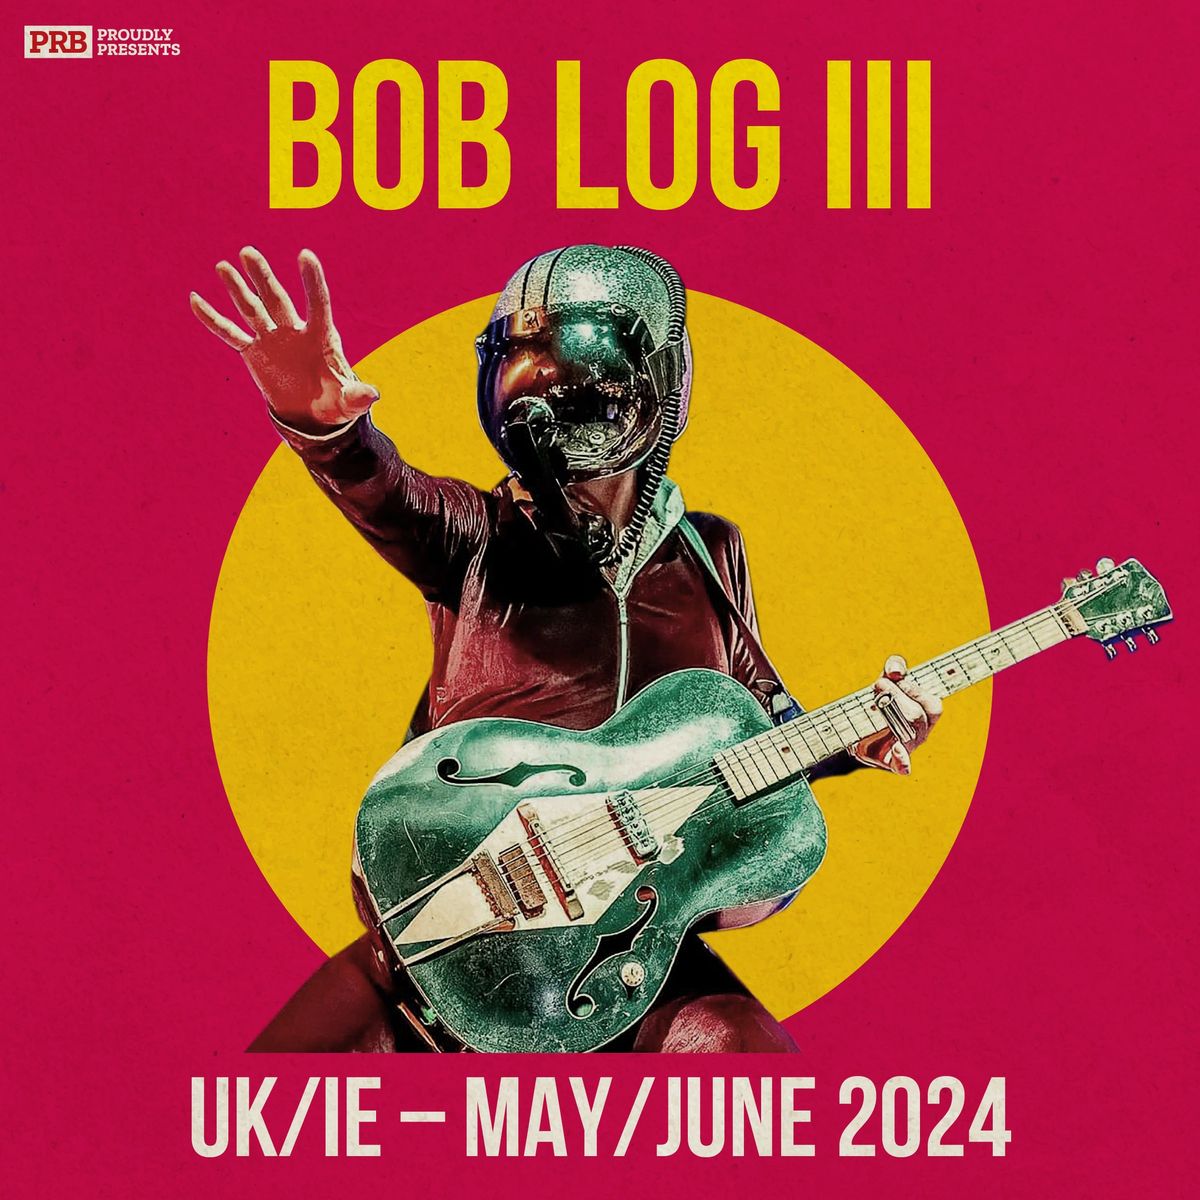 Bob Log III - LEEDS